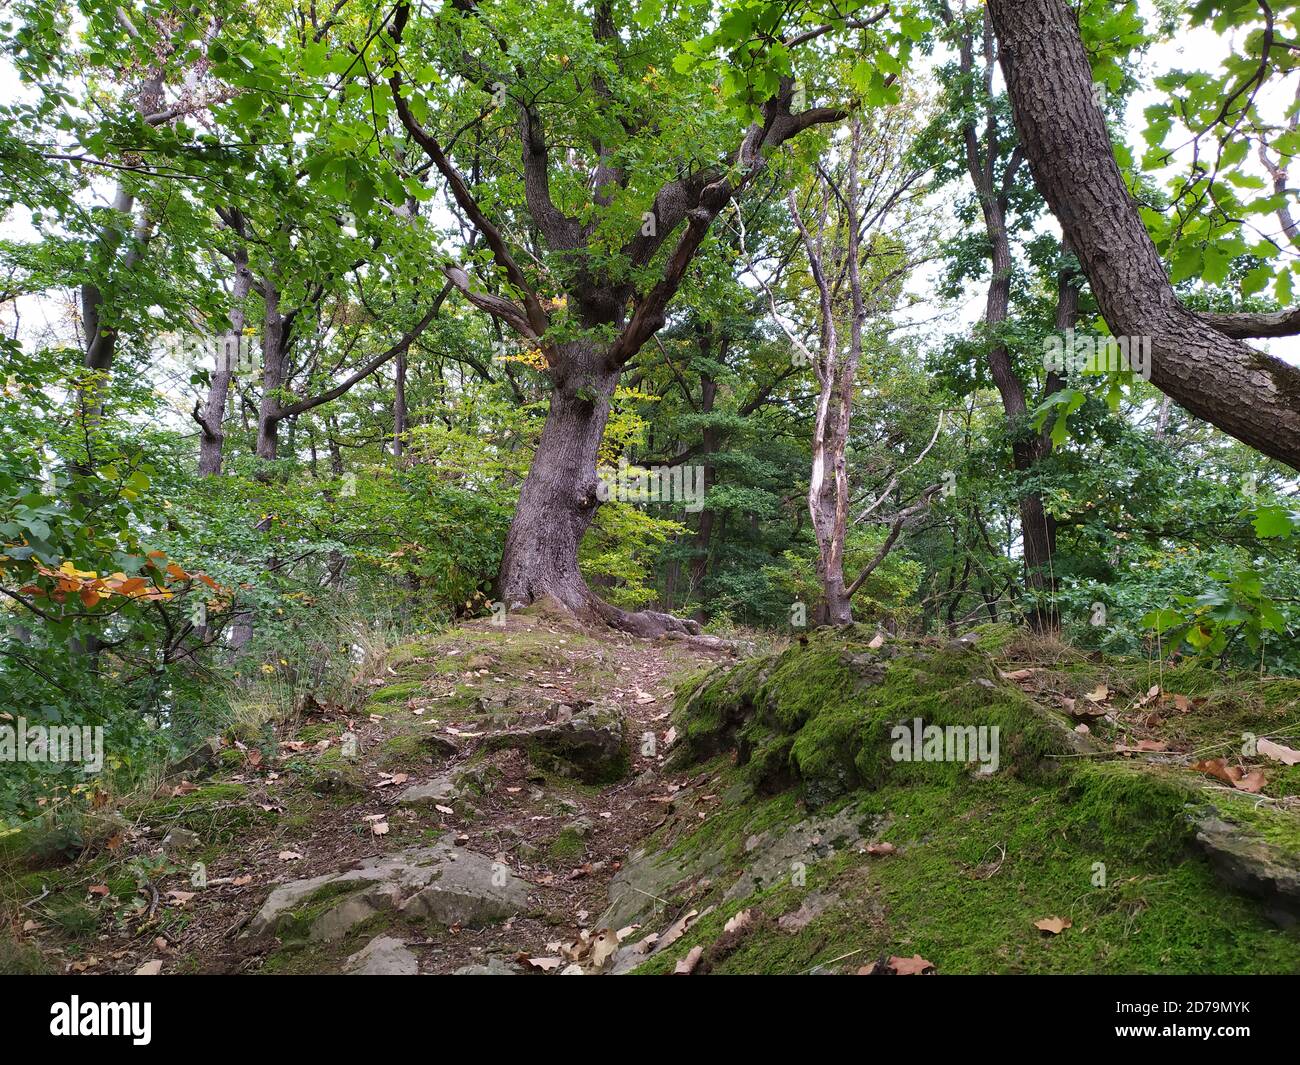 Sentier de randonnée naturel à travers les bois comme chemin de randonnée idyllique pour les amoureux de la nature proche de la nature dans un paysage paisible avec arbres et feuillage en automne Banque D'Images